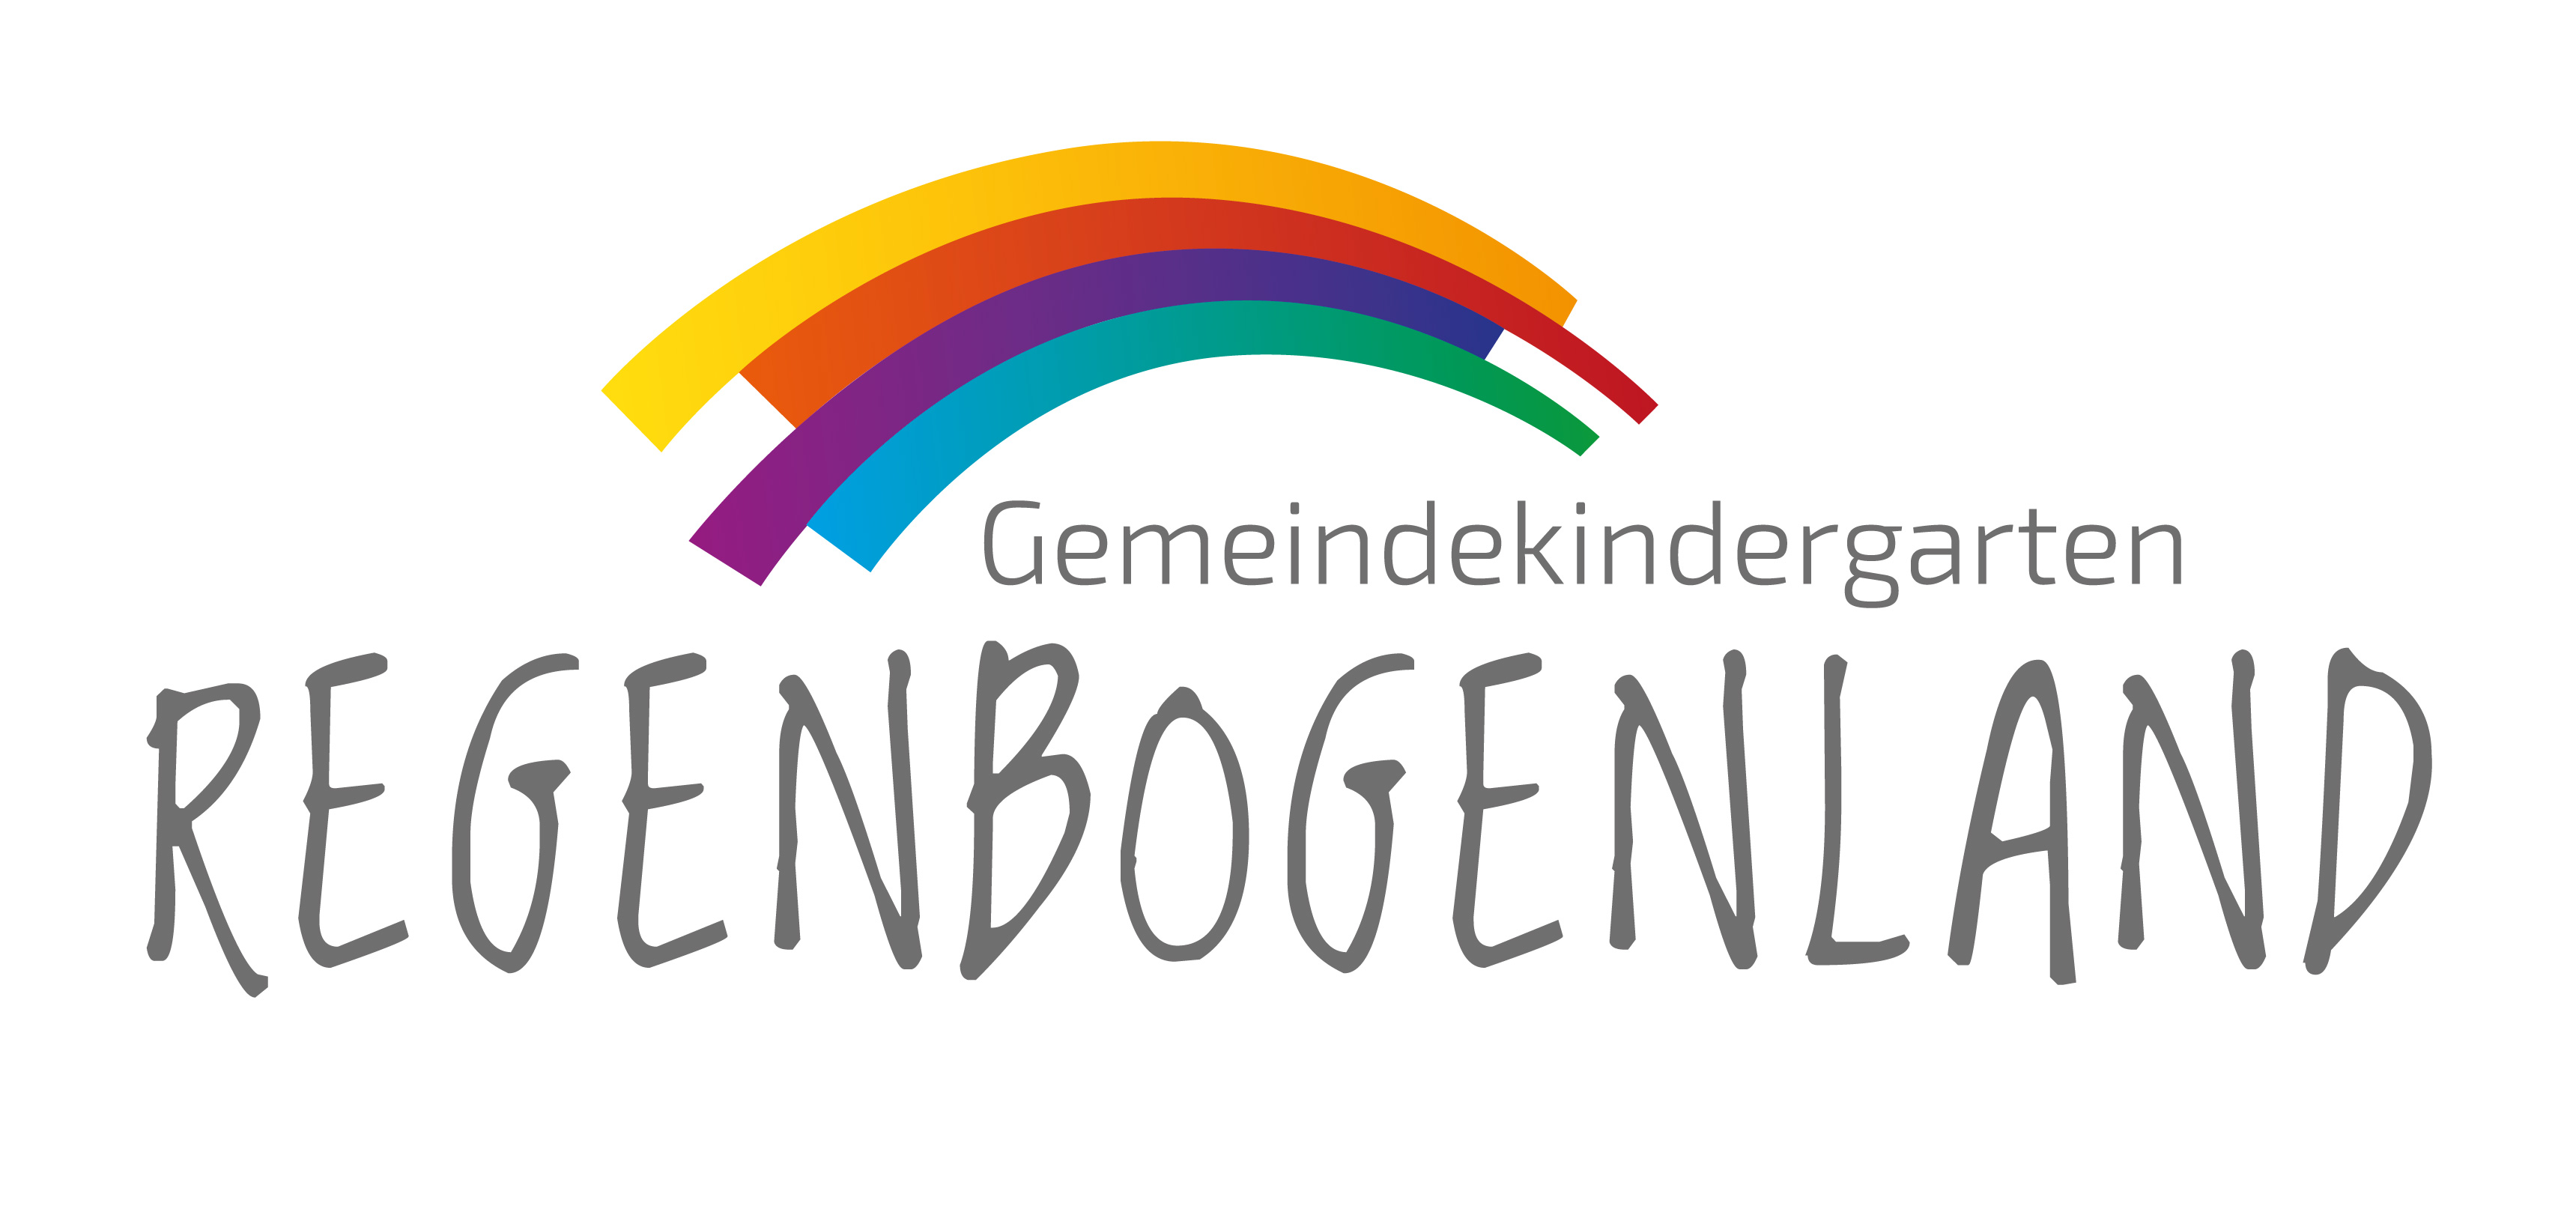 Link zur Webseite des Gemeindekindergarten Regenbogenland